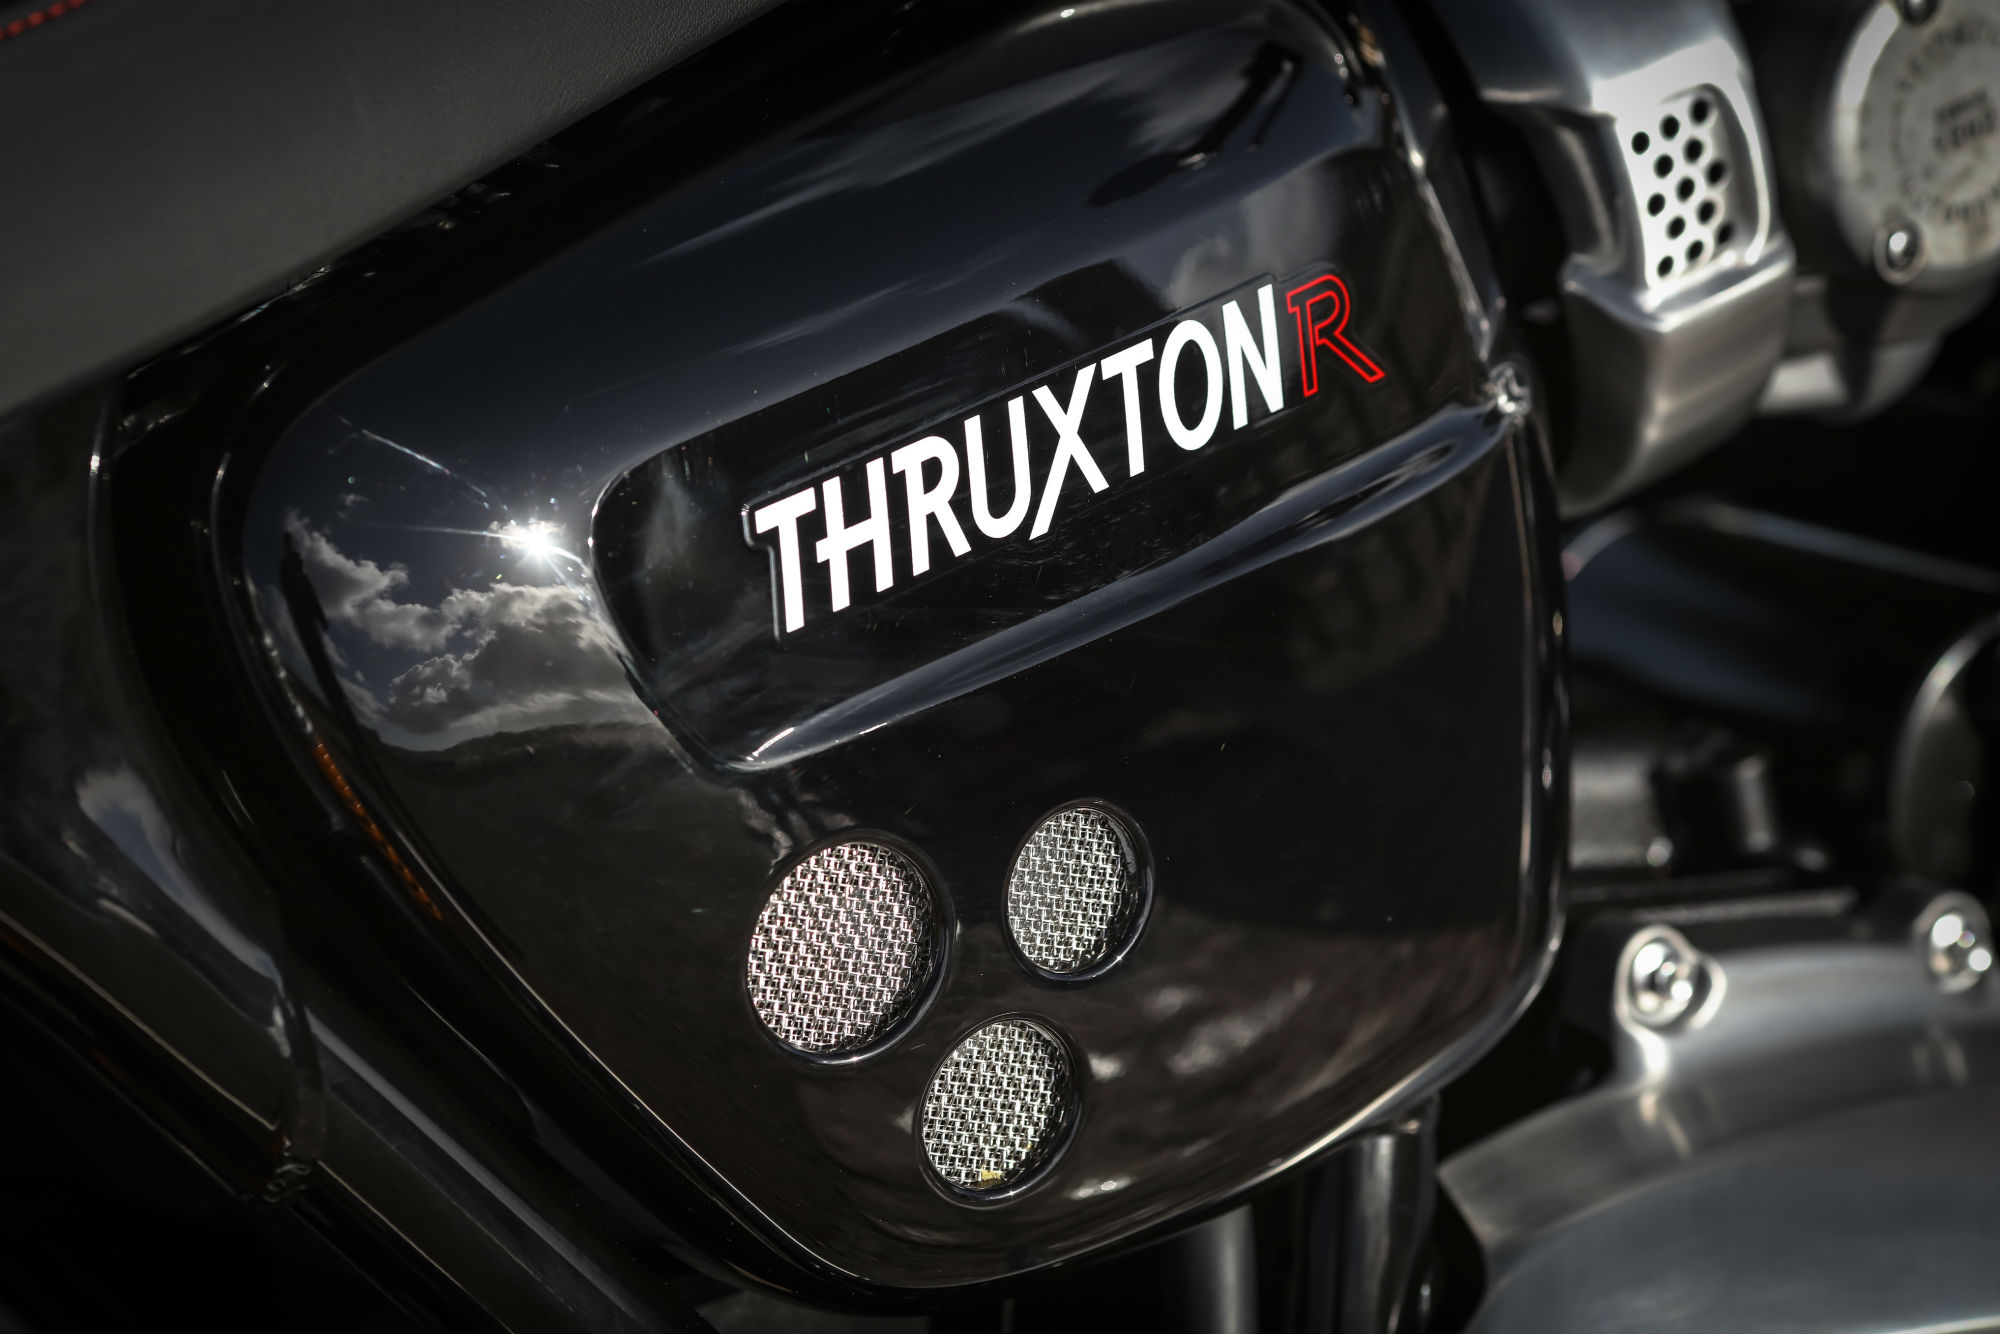 First ride: Triumph Thruxton R review